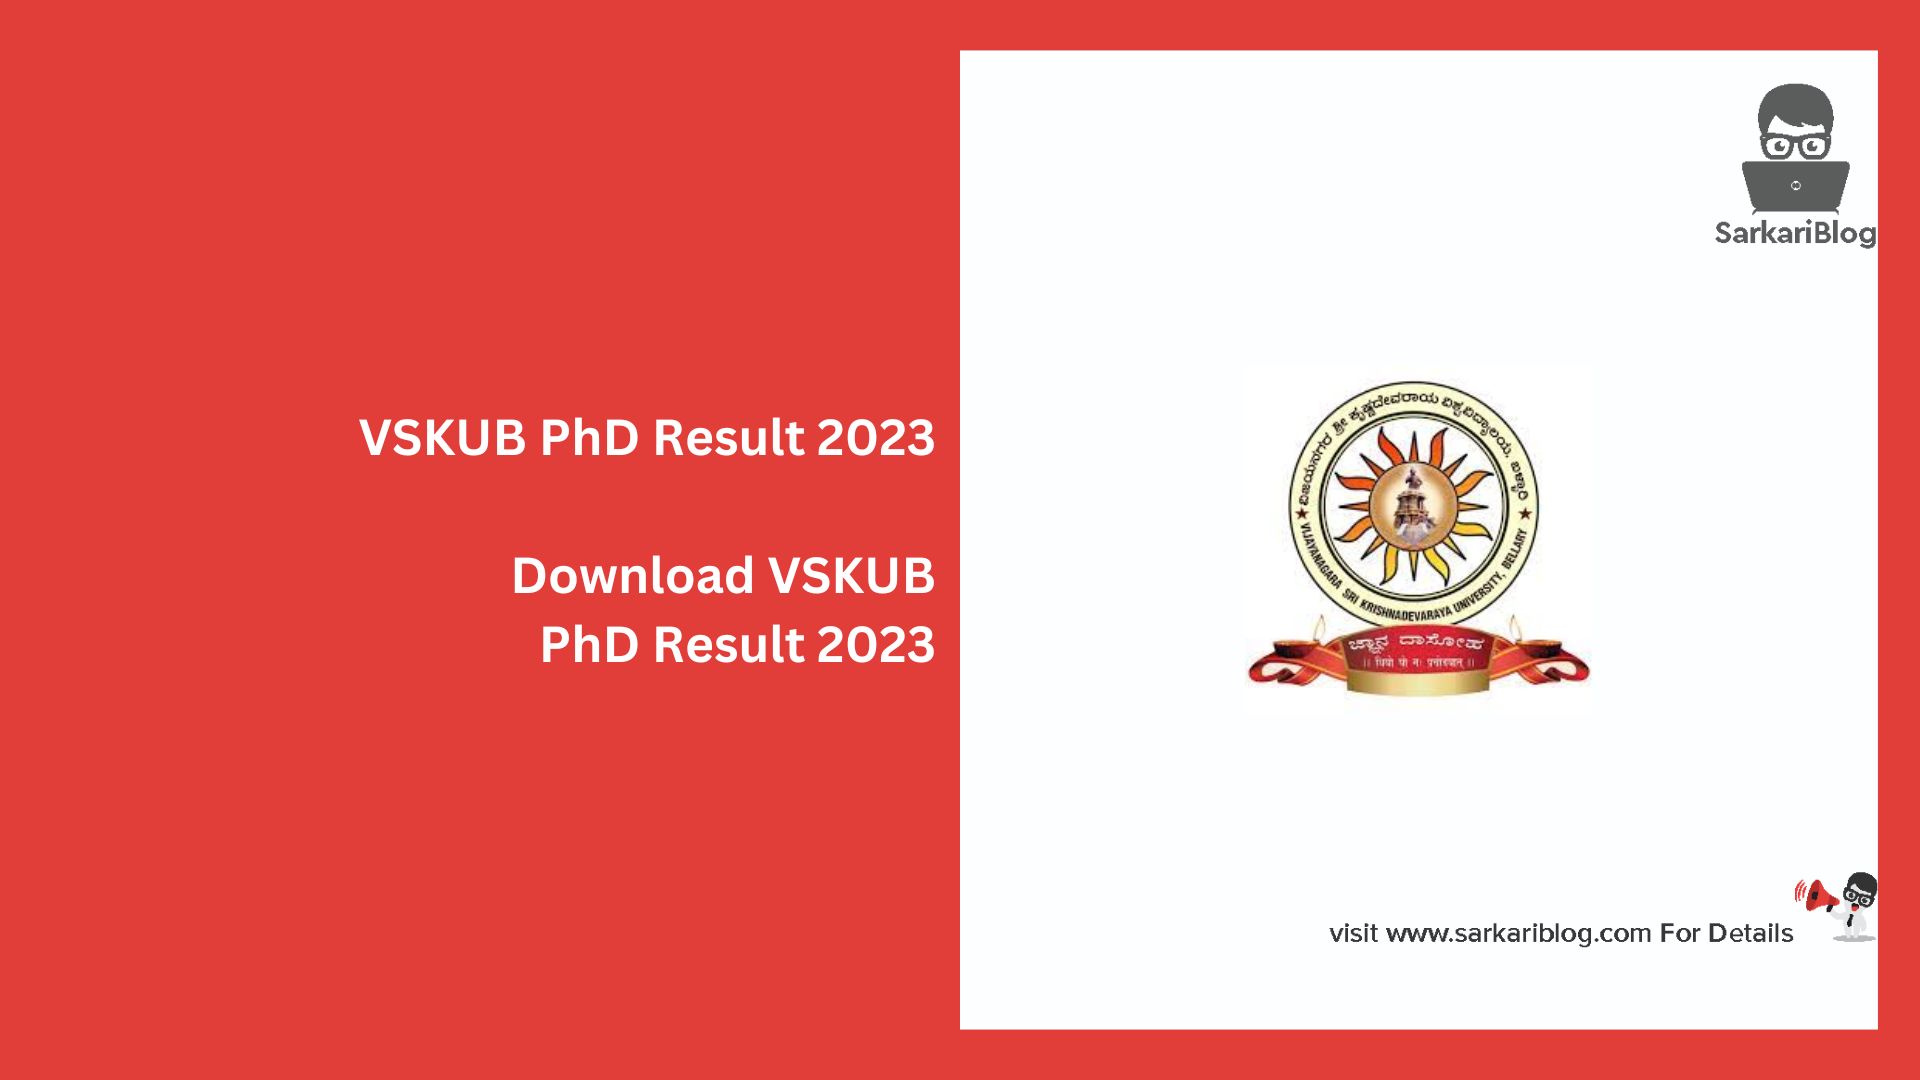 VSKUB PhD Result 2023